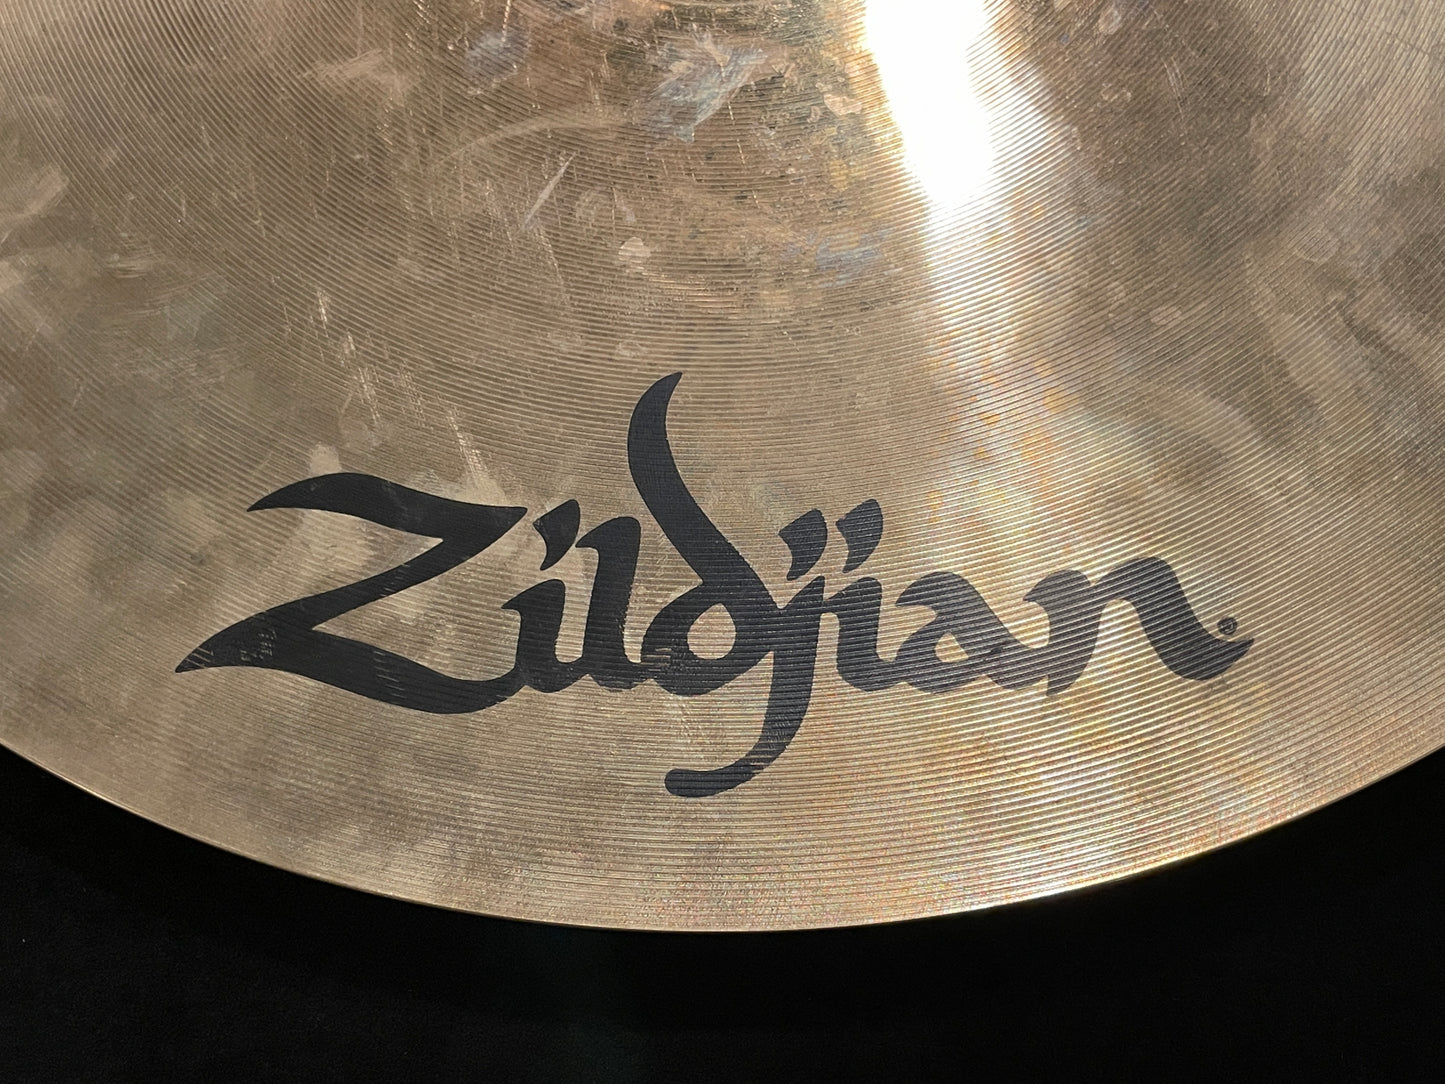 20" Zildjian A Custom Flat Top Ride 2376g A20528